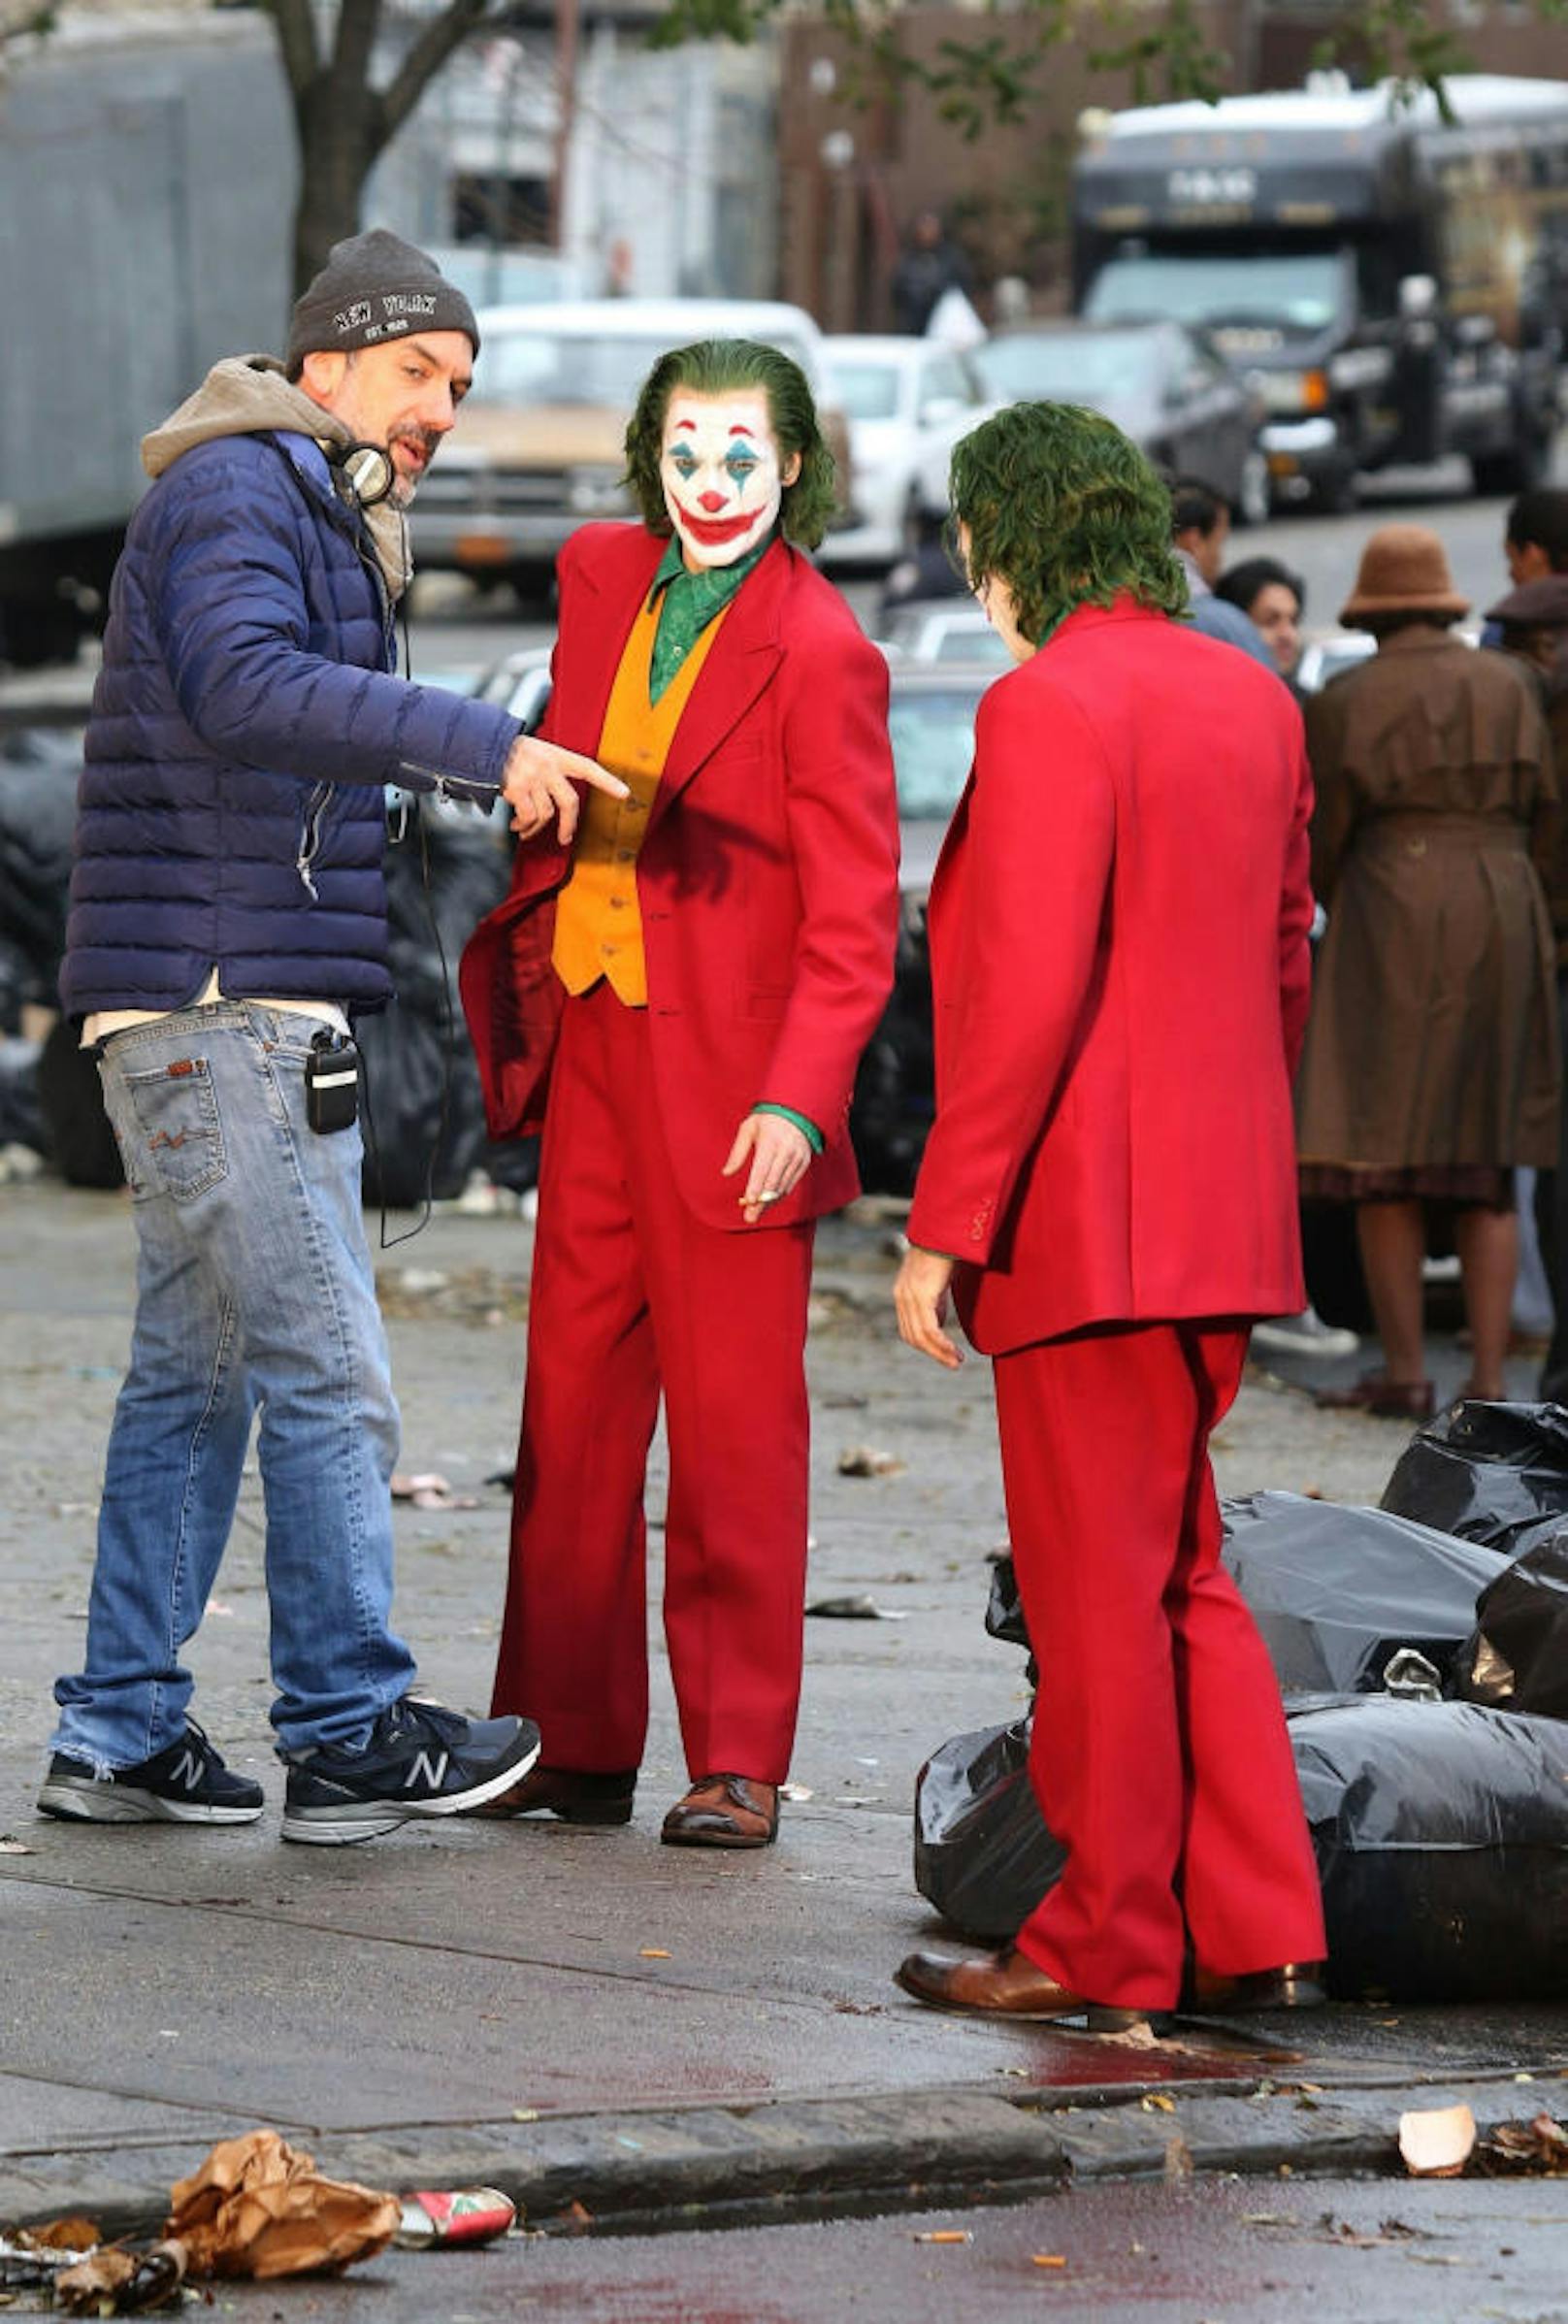 Deshalb waren am Set auch zwei Jokers unterwegs. Denn ohne Stunt-Double ging bei dieser Szene gar nichts. 